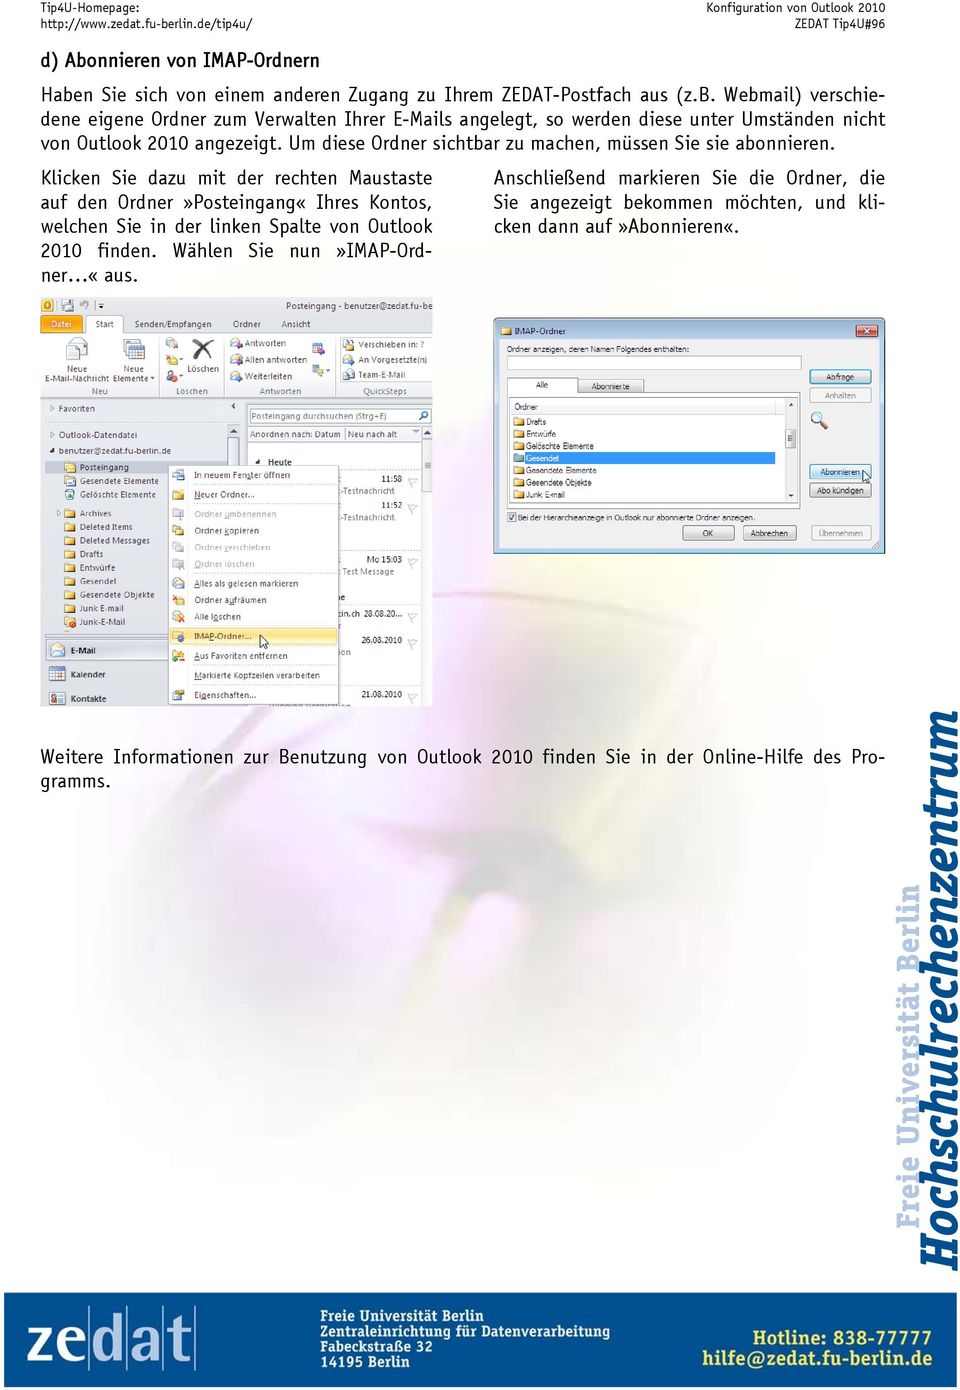 Klicken Sie dazu mit der rechten Maustaste auf den Ordner»Posteingang«Ihres Kontos, welchen Sie in der linken Spalte von Outlook 2010 finden.